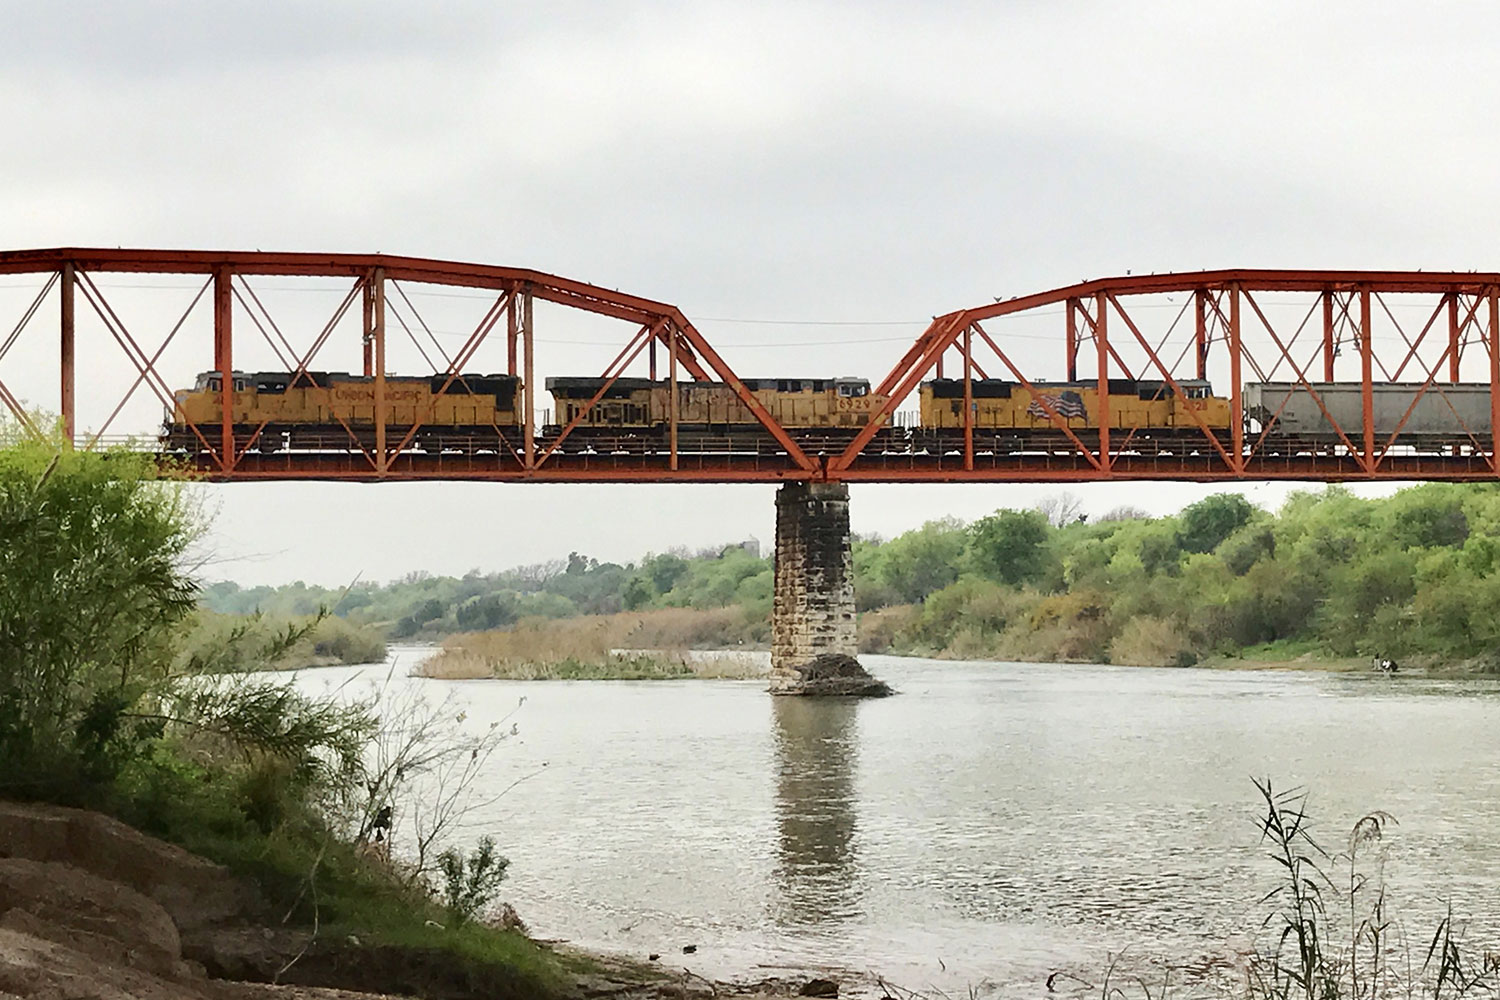 Train crosses the Rio Grande